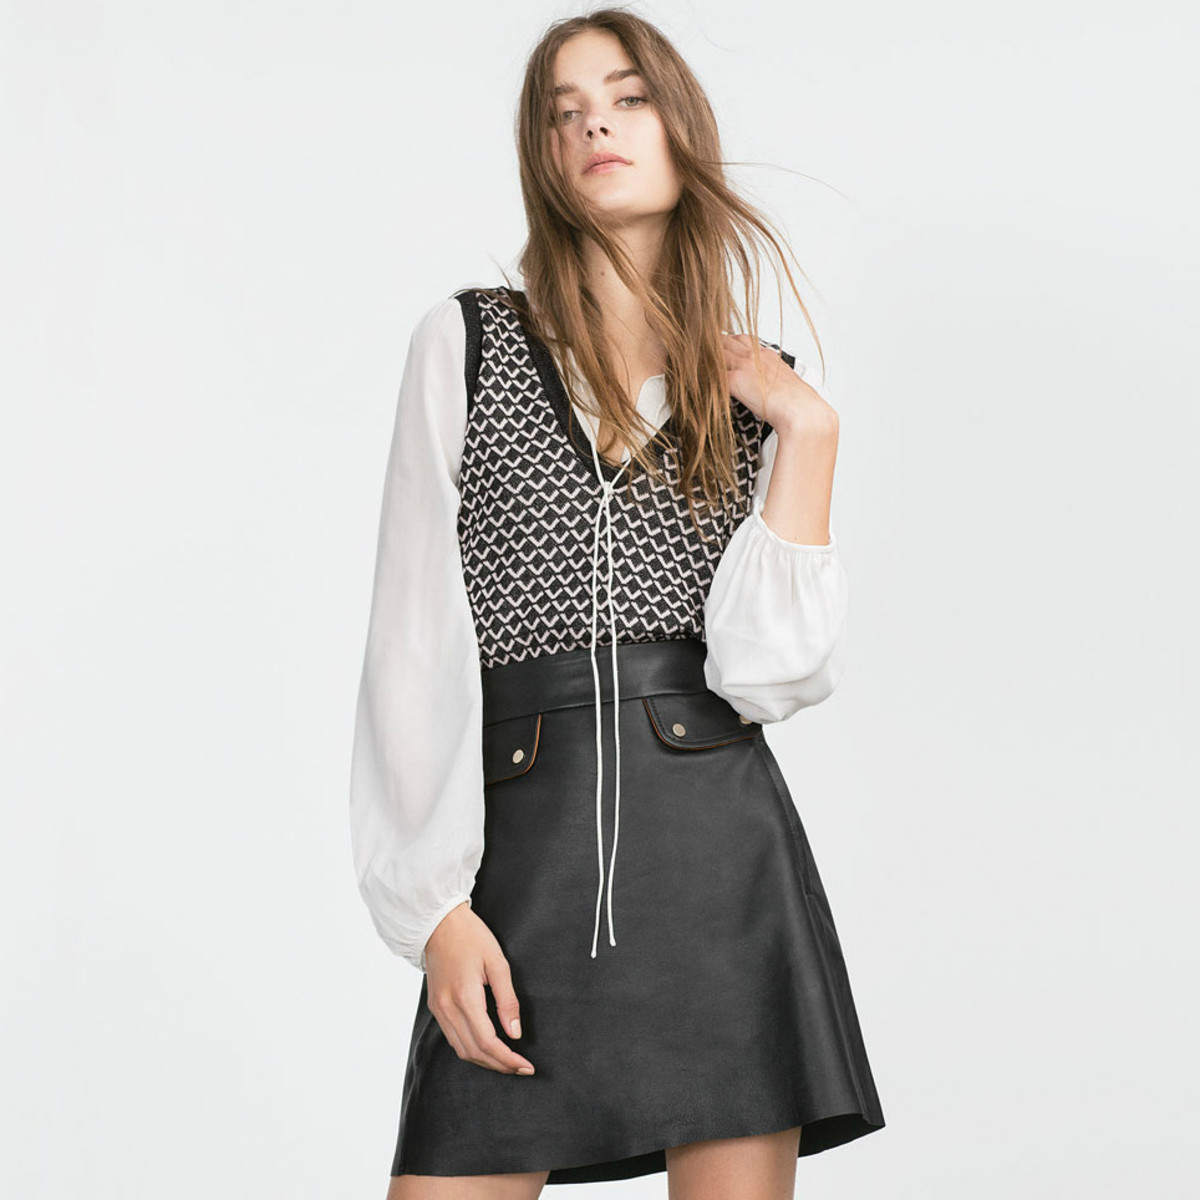 Zara micro-jacquard waistcoat, $29.90, available at Zara.